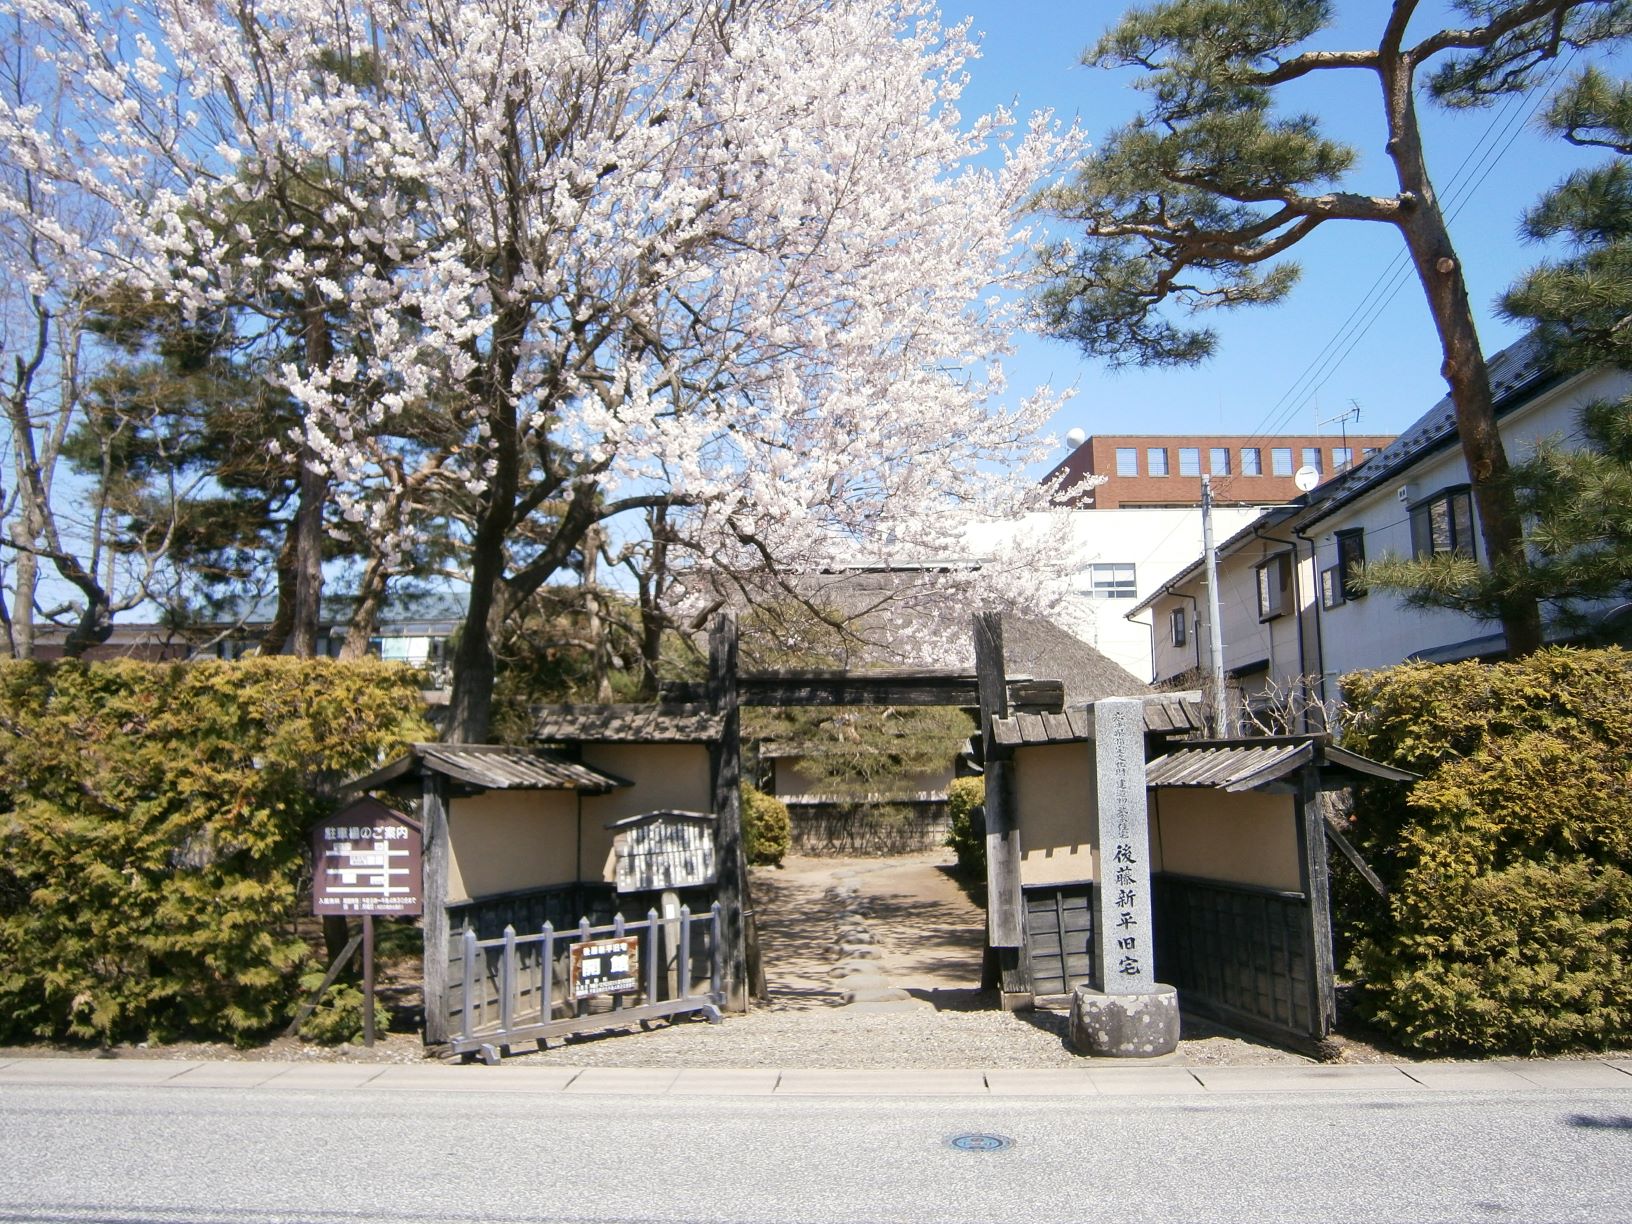 生垣の塀と大きな桜の木のある後藤新平旧宅の門の写真